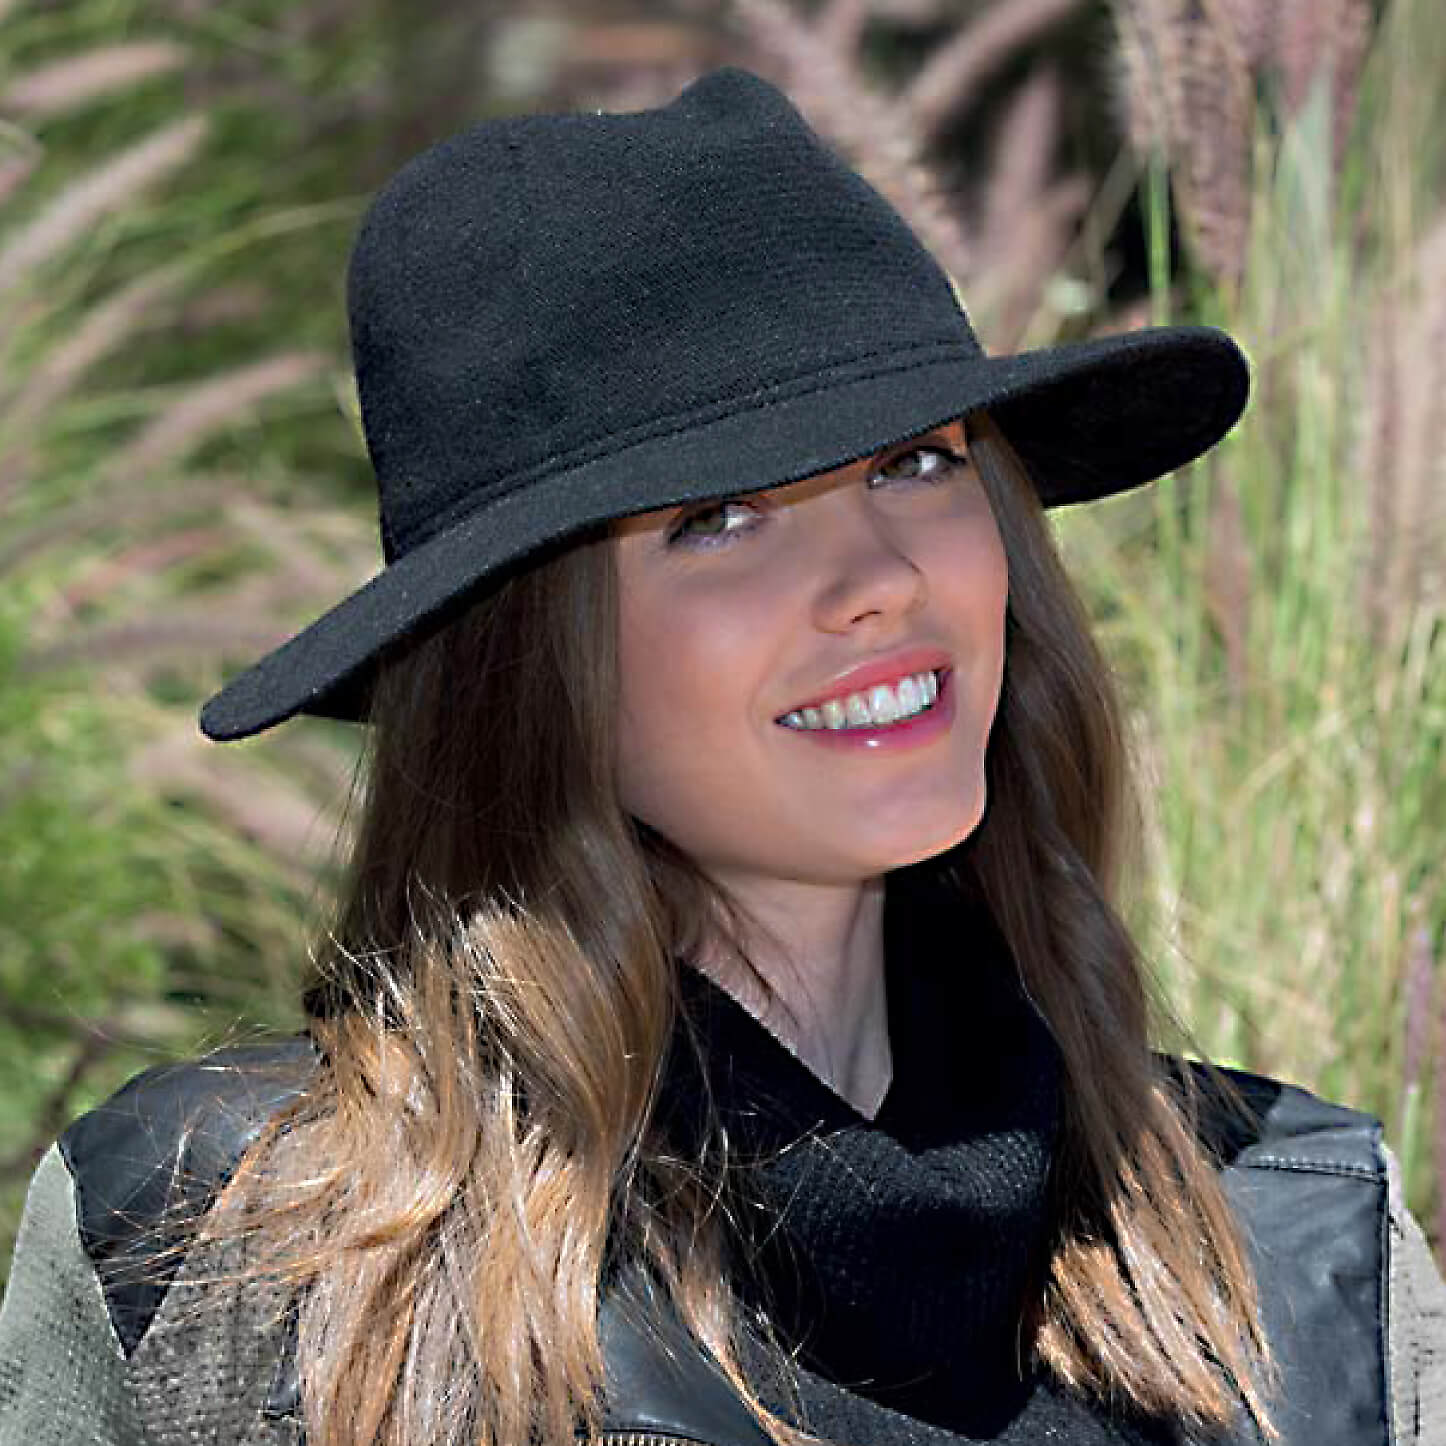 RL327 sombrero fedora de lana de cordero suzl. Trilby de dos tonos de alta calidad para mujer, confeccionado con lana de cordero supersuave, rematado con una sencilla diadema de cinta de grosgrain.